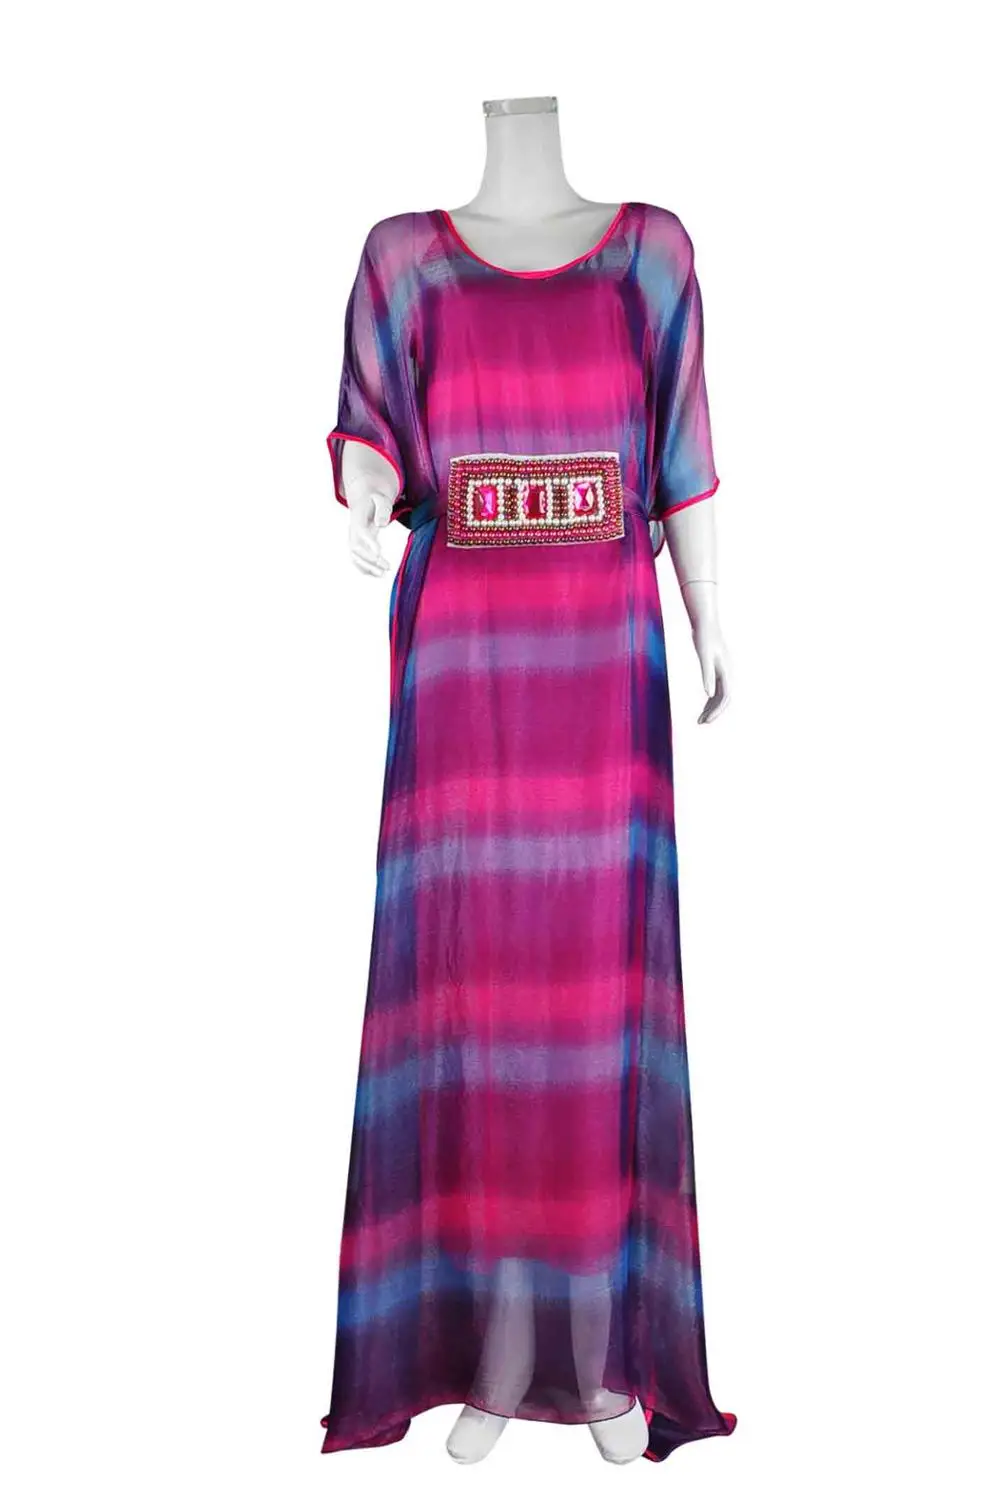 Африканское платье для женщин кафтан размера плюс длинное шифоновое платье с вышивкой платье африканская мода турецкое арабское платье LF-18 - Цвет: rainbow2